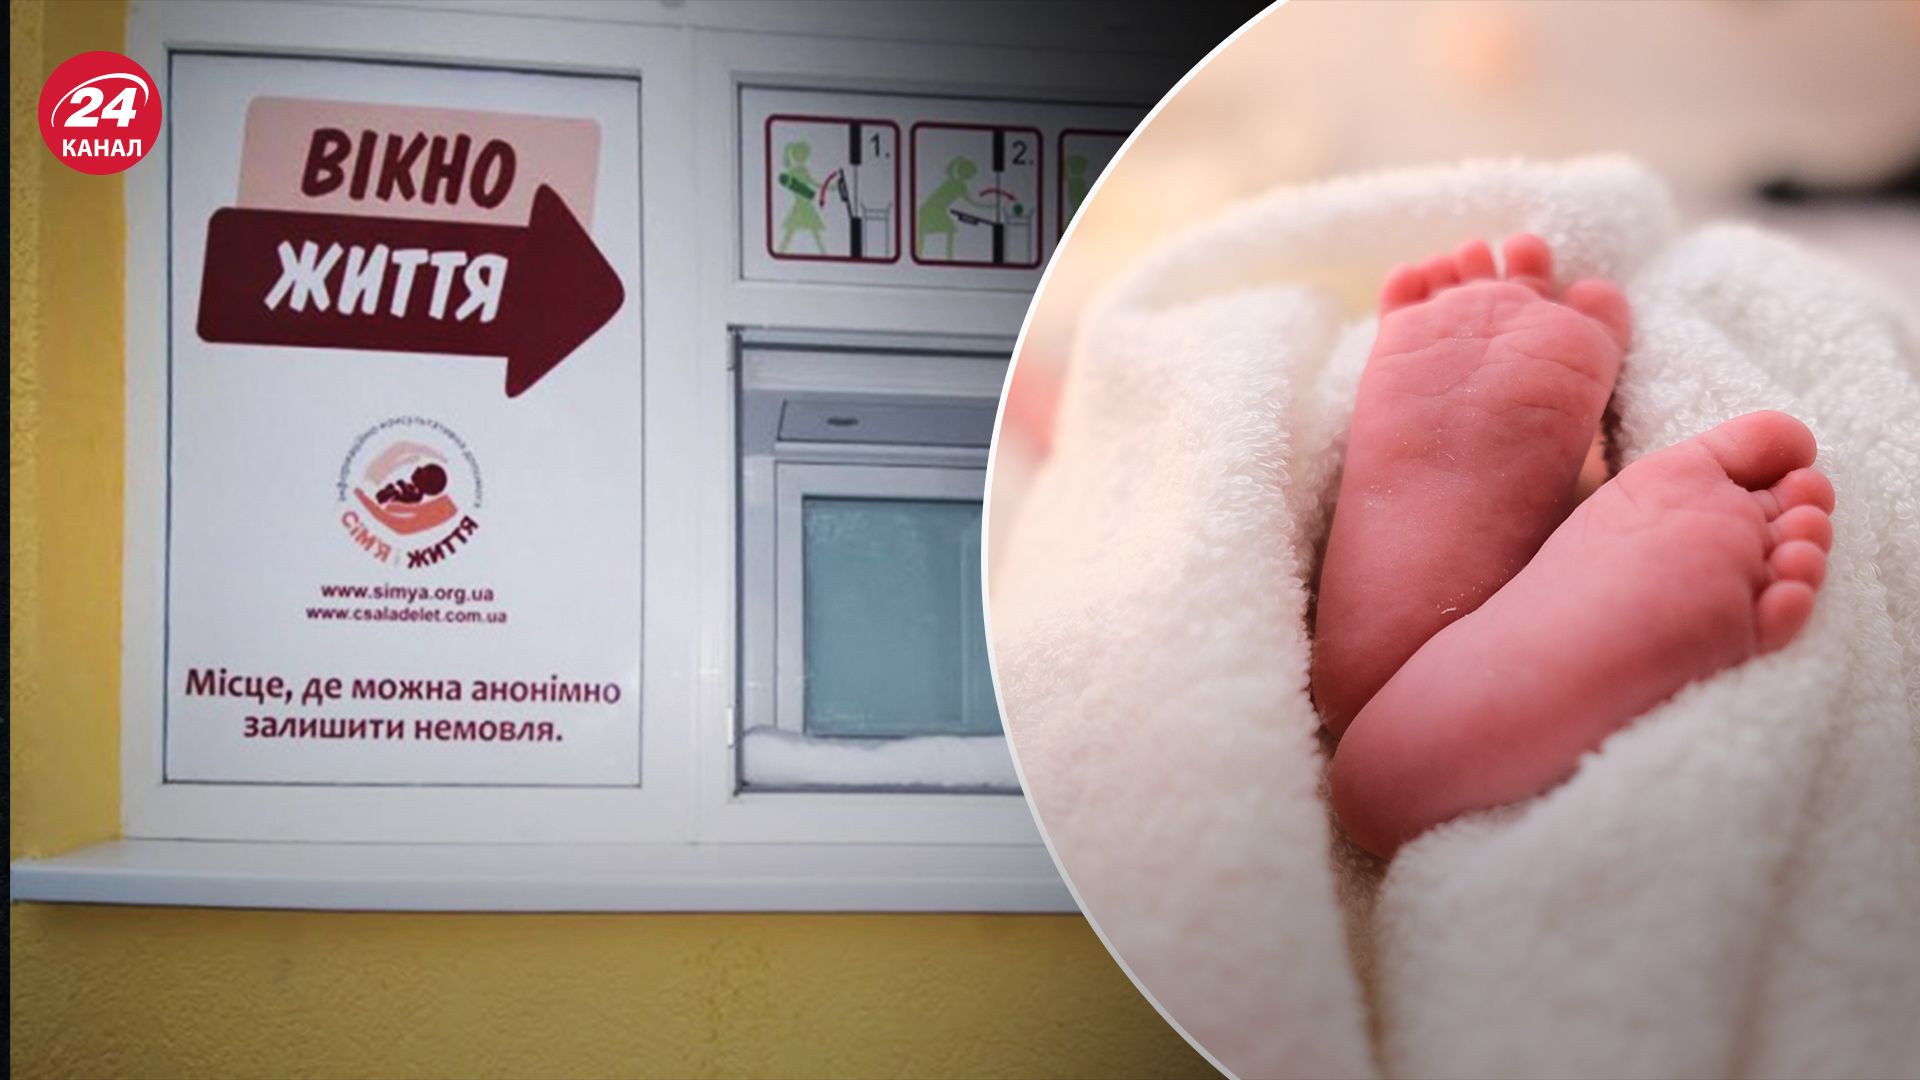 У Києві у "вікні життя" залишили немовля